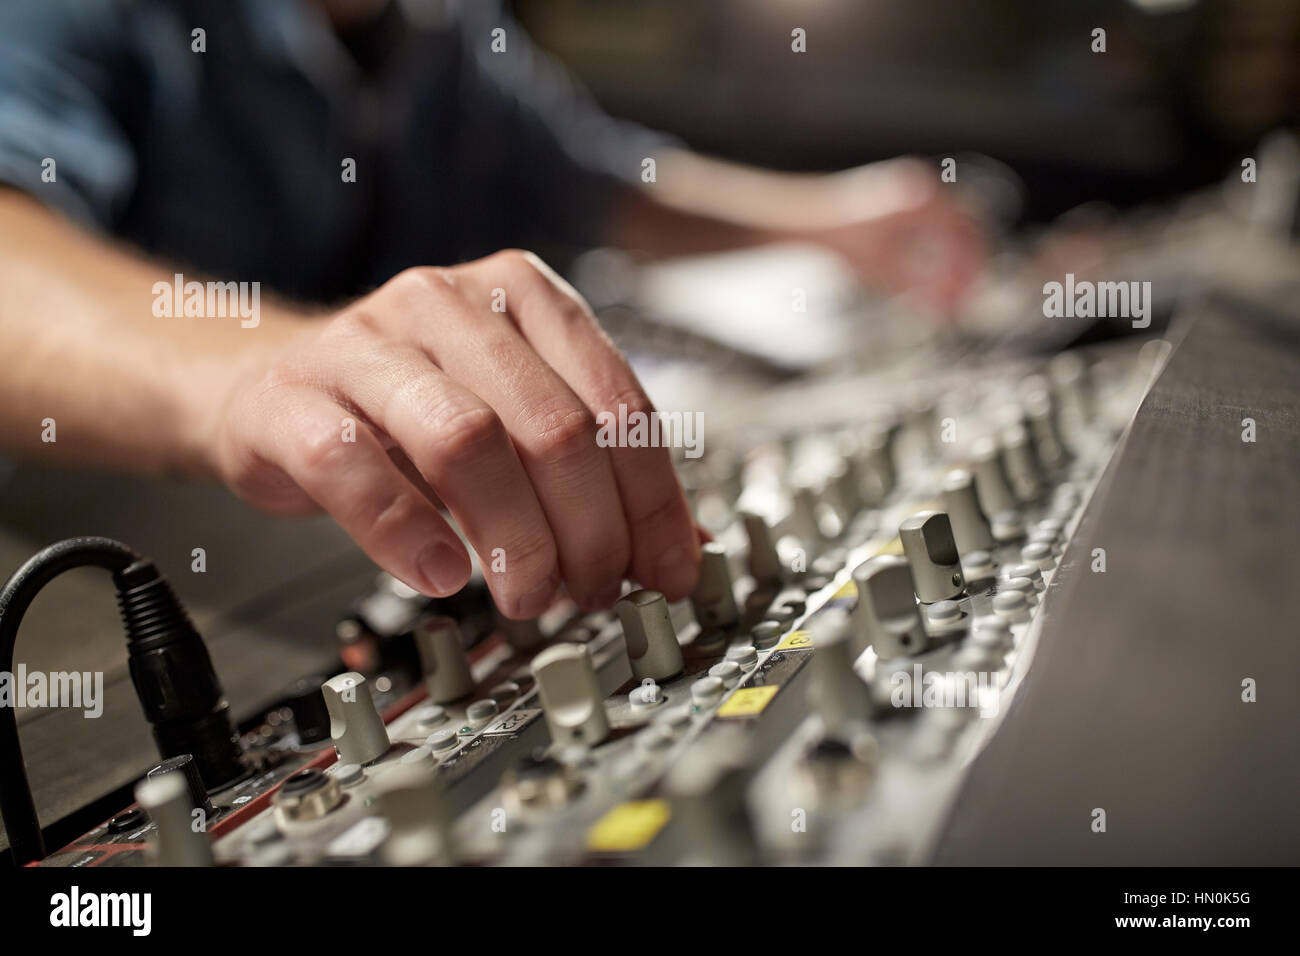 Uomo che utilizza la console di miscelazione in music studio di registrazione Foto Stock